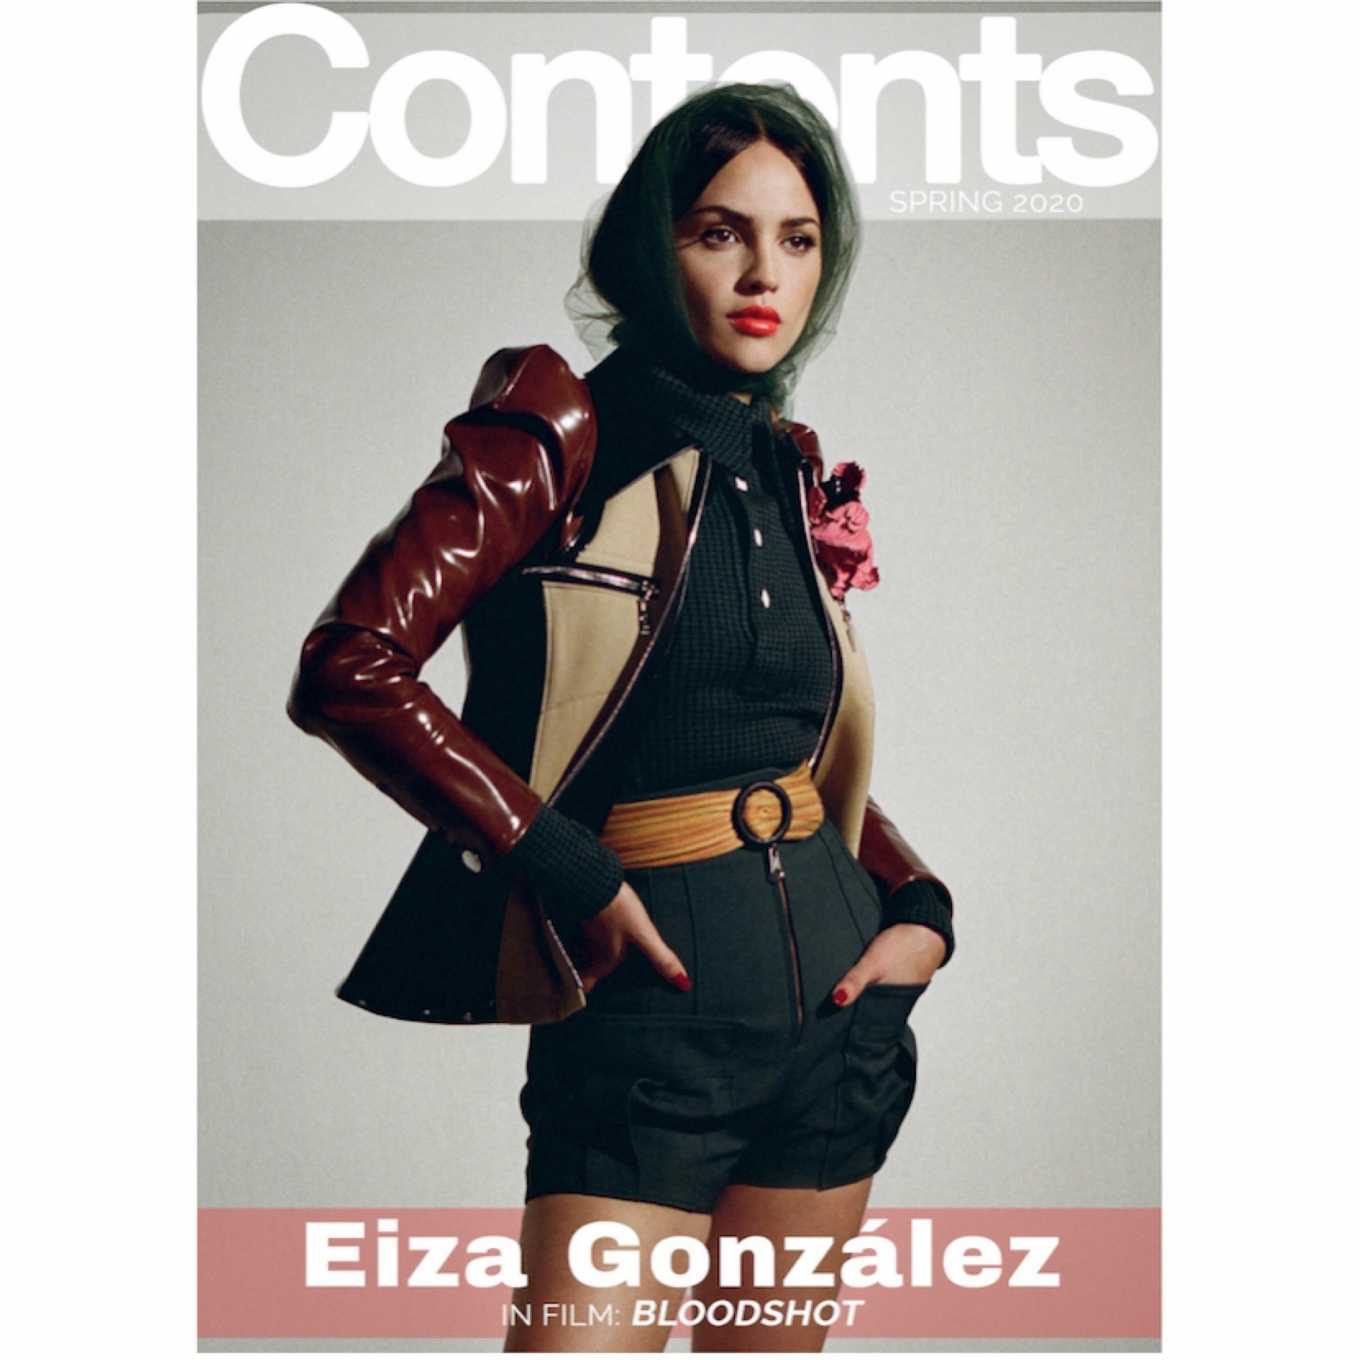 Eiza Gonzalez â€“ ContentMode Magazine (Spring 2020) adds